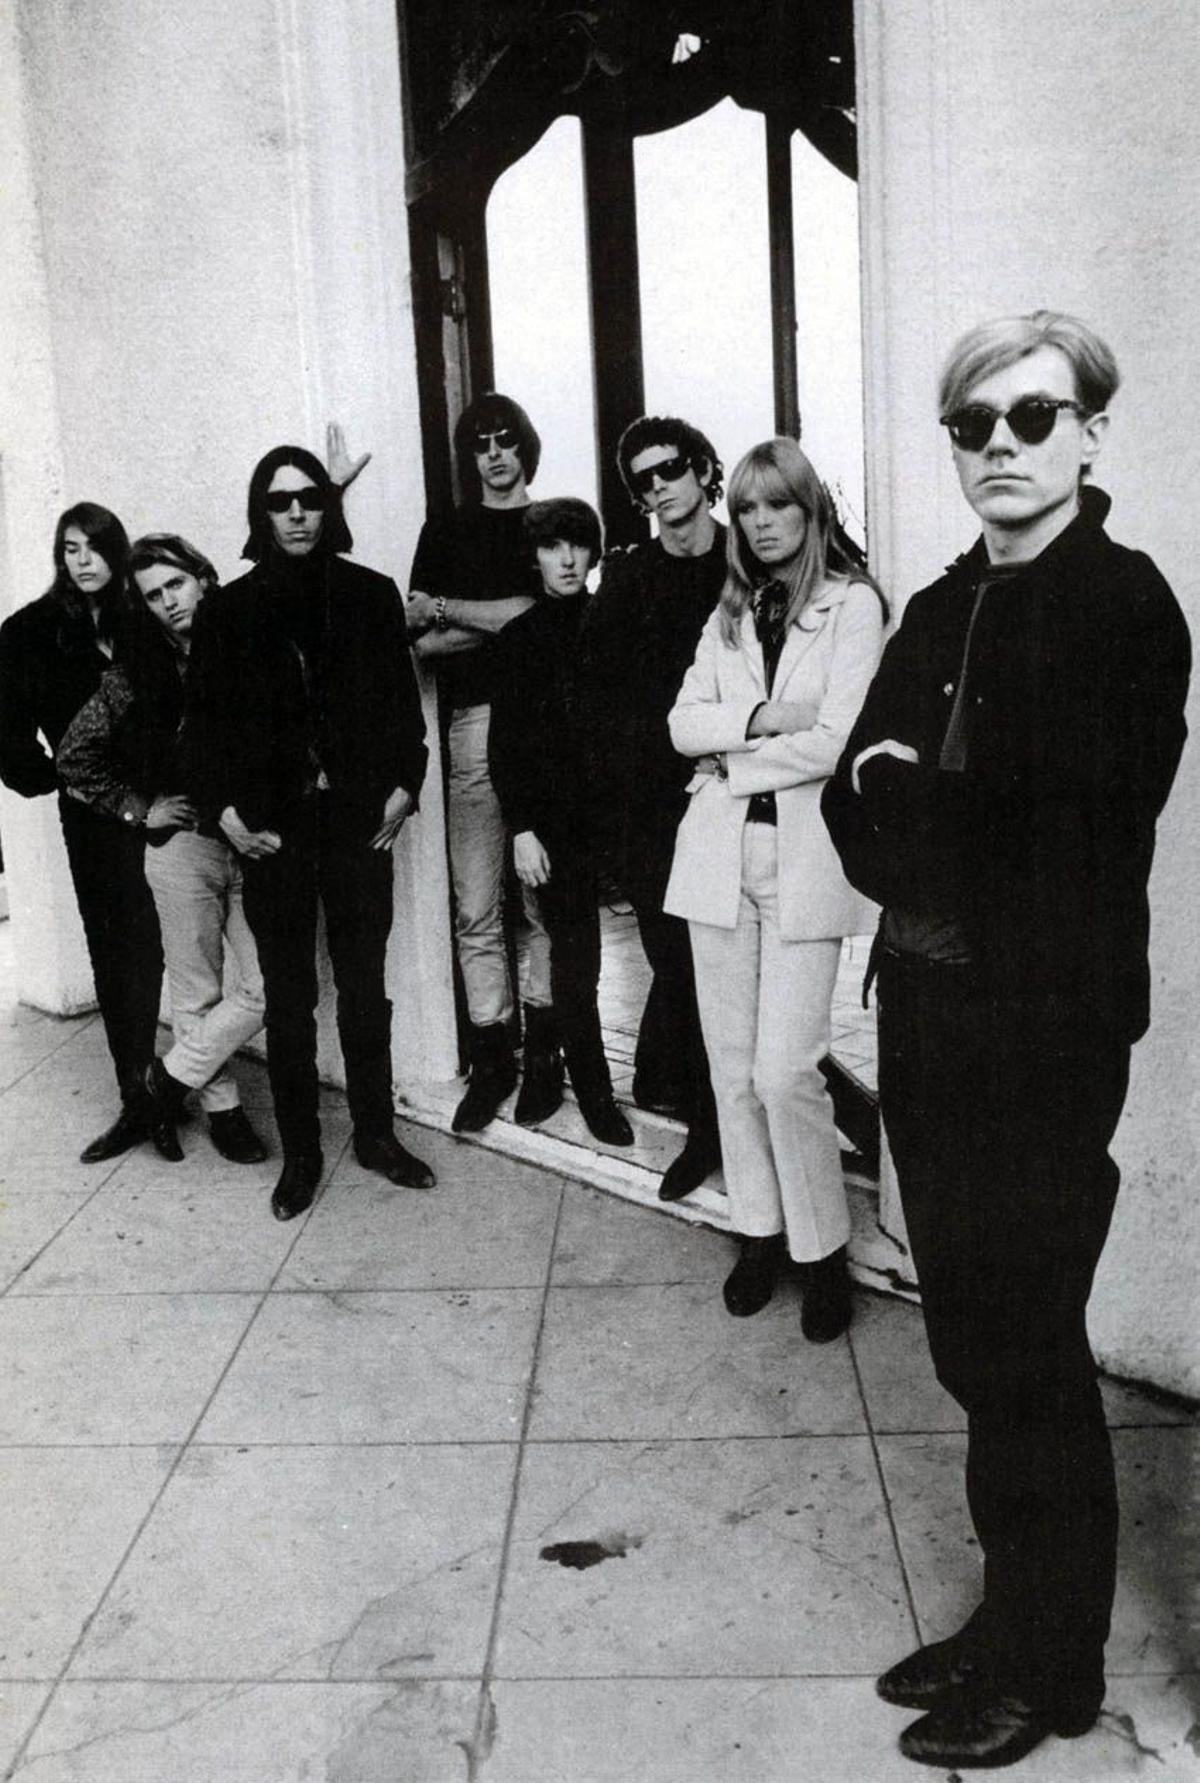 La banda posando junto con Andy Warhol.